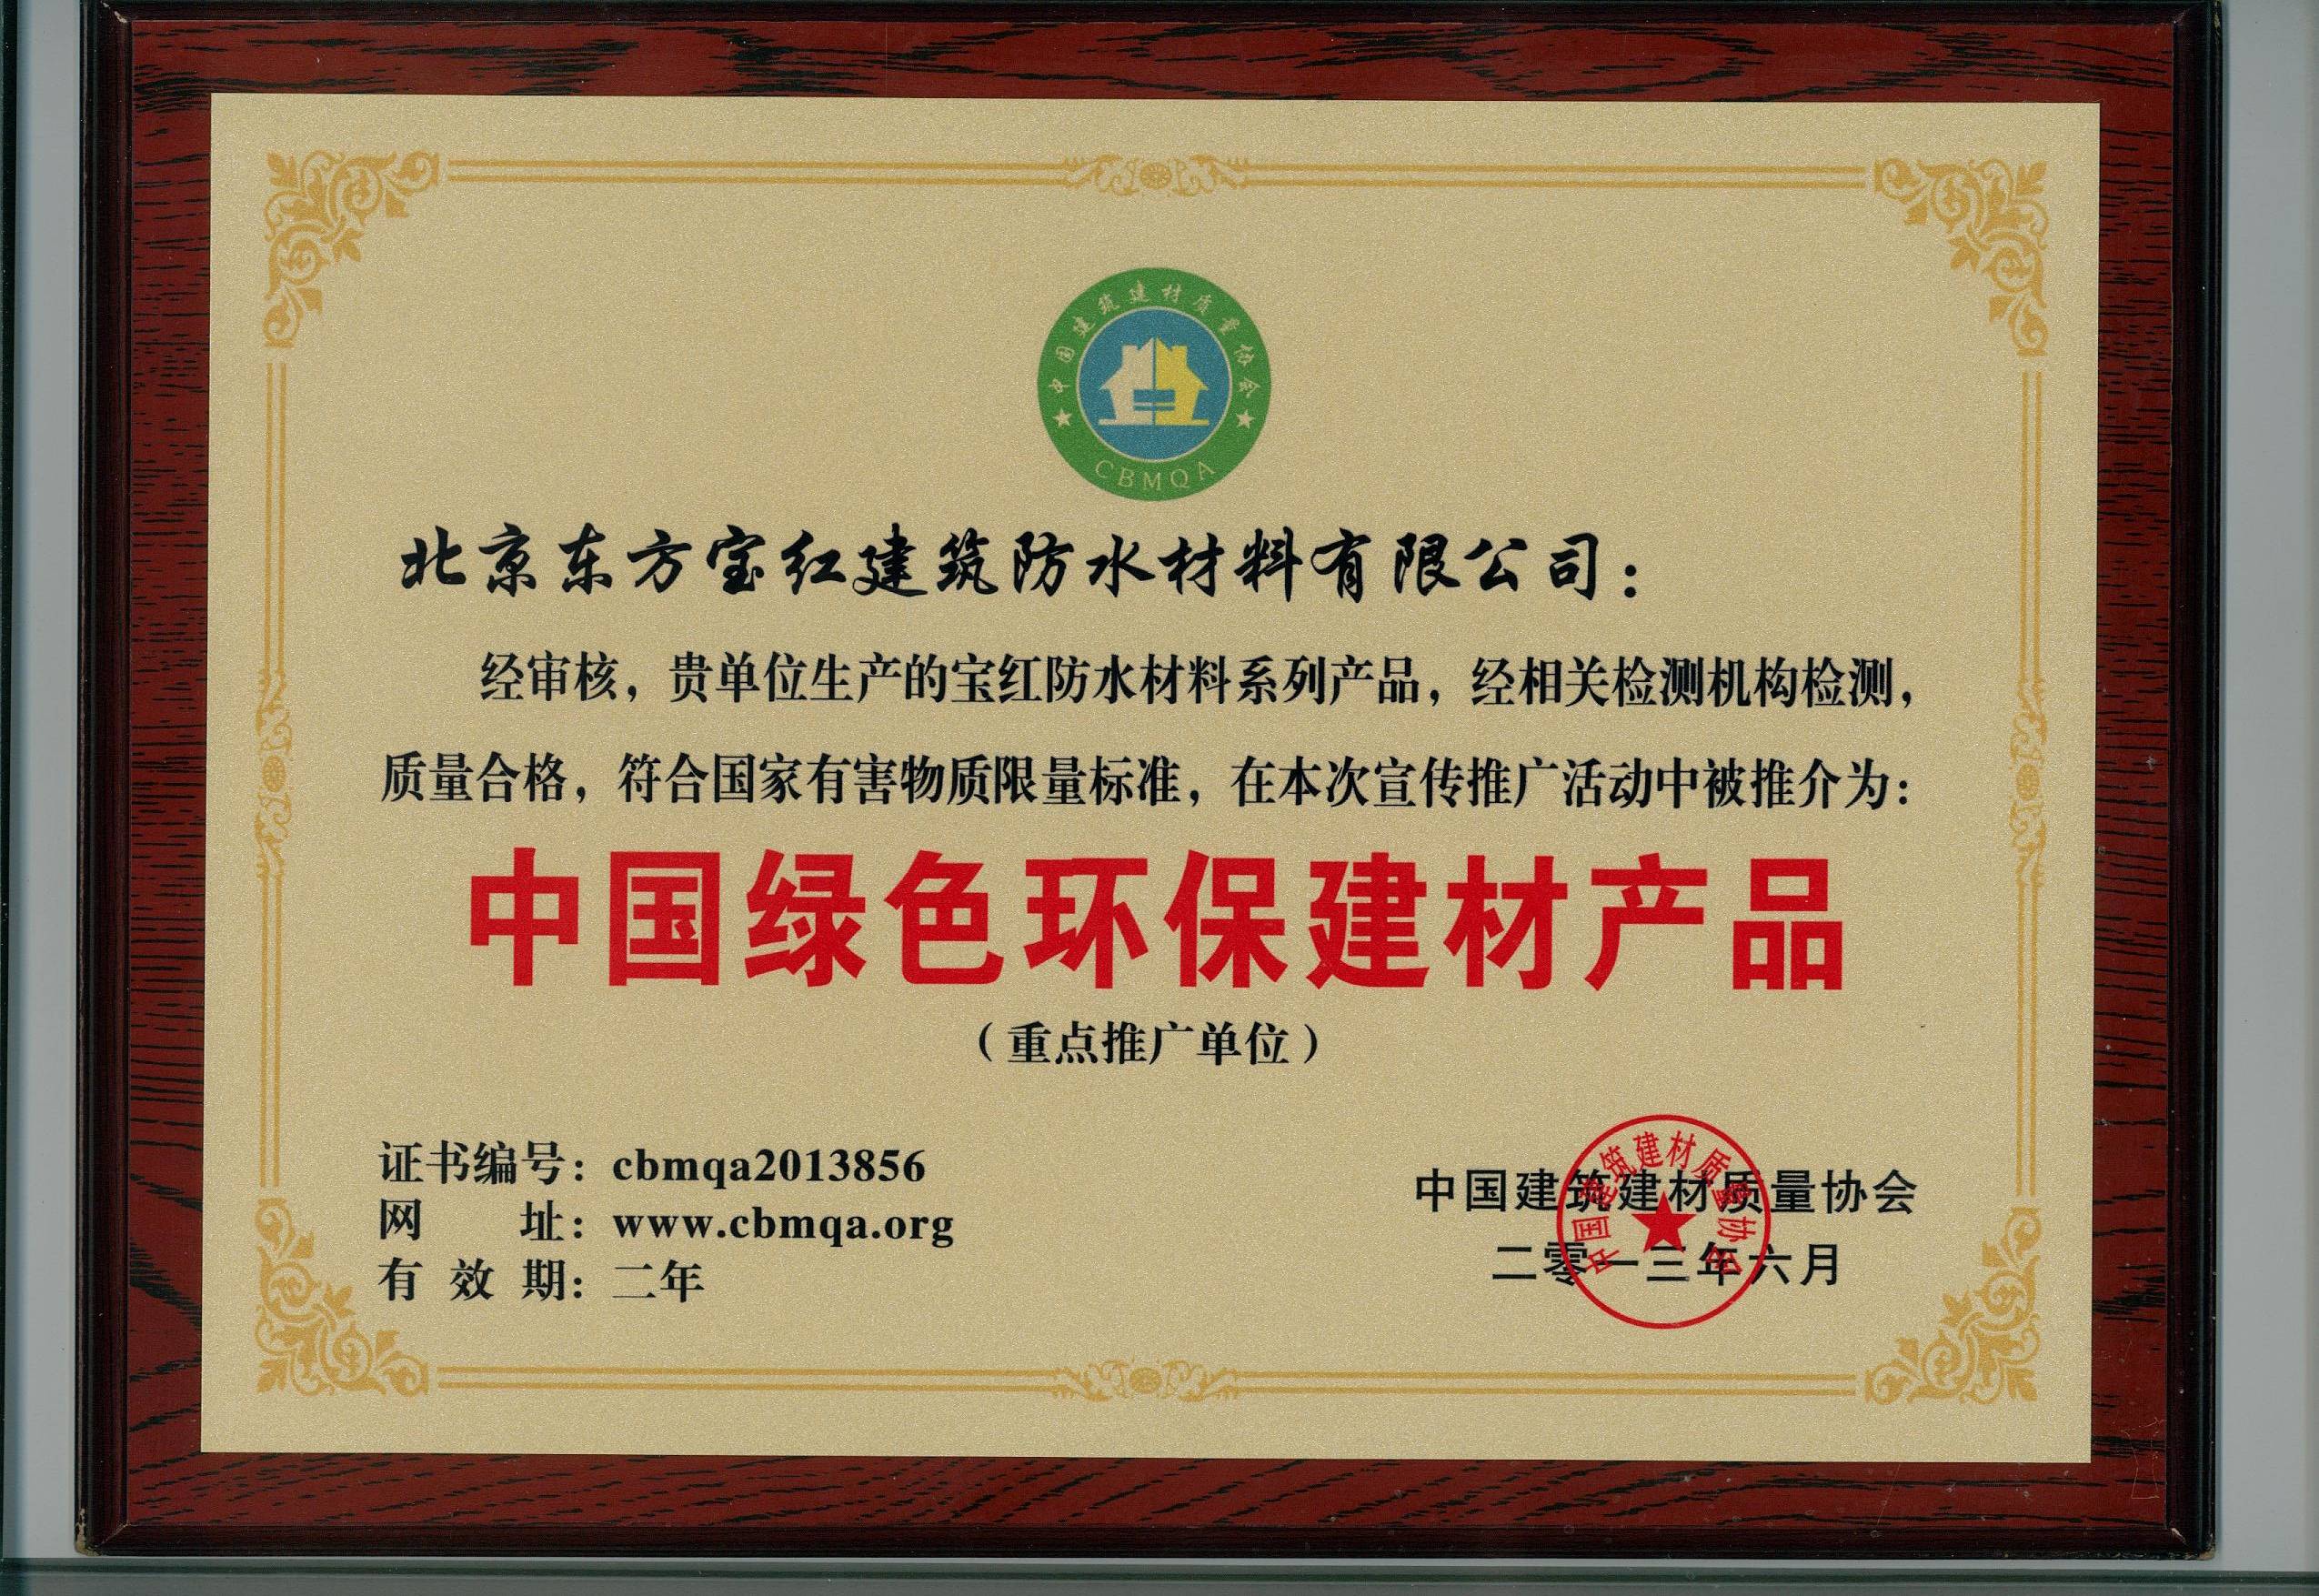 北京东方宝红建筑防水材料有限公司:防水资质与荣誉证书